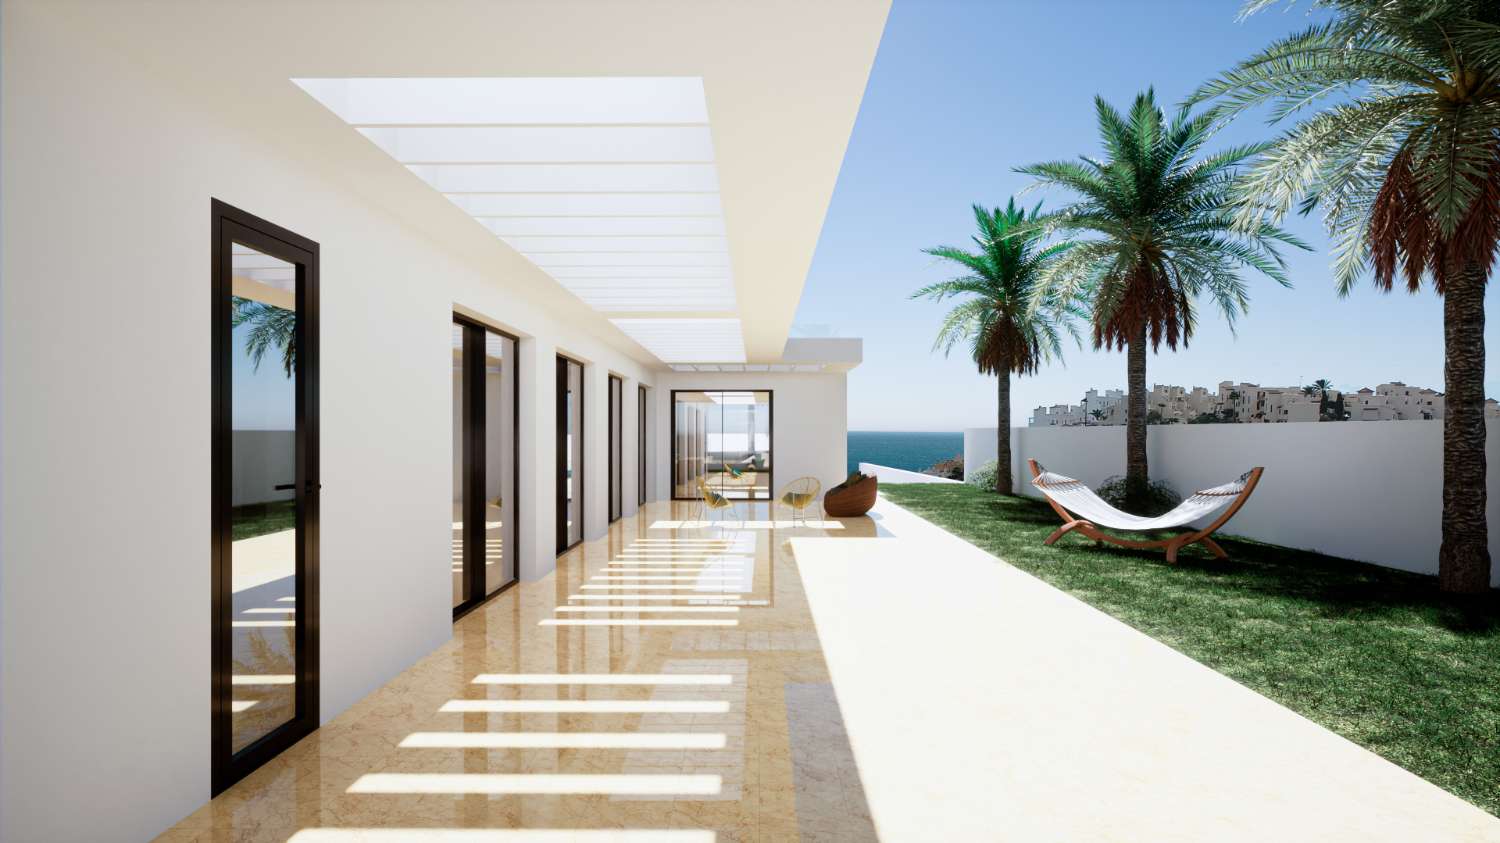 Villa de plain-pied de 208 m2 sur un terrain de 982 m2. Belle vue sur la mer. En plus 229 m2 de terrasses.